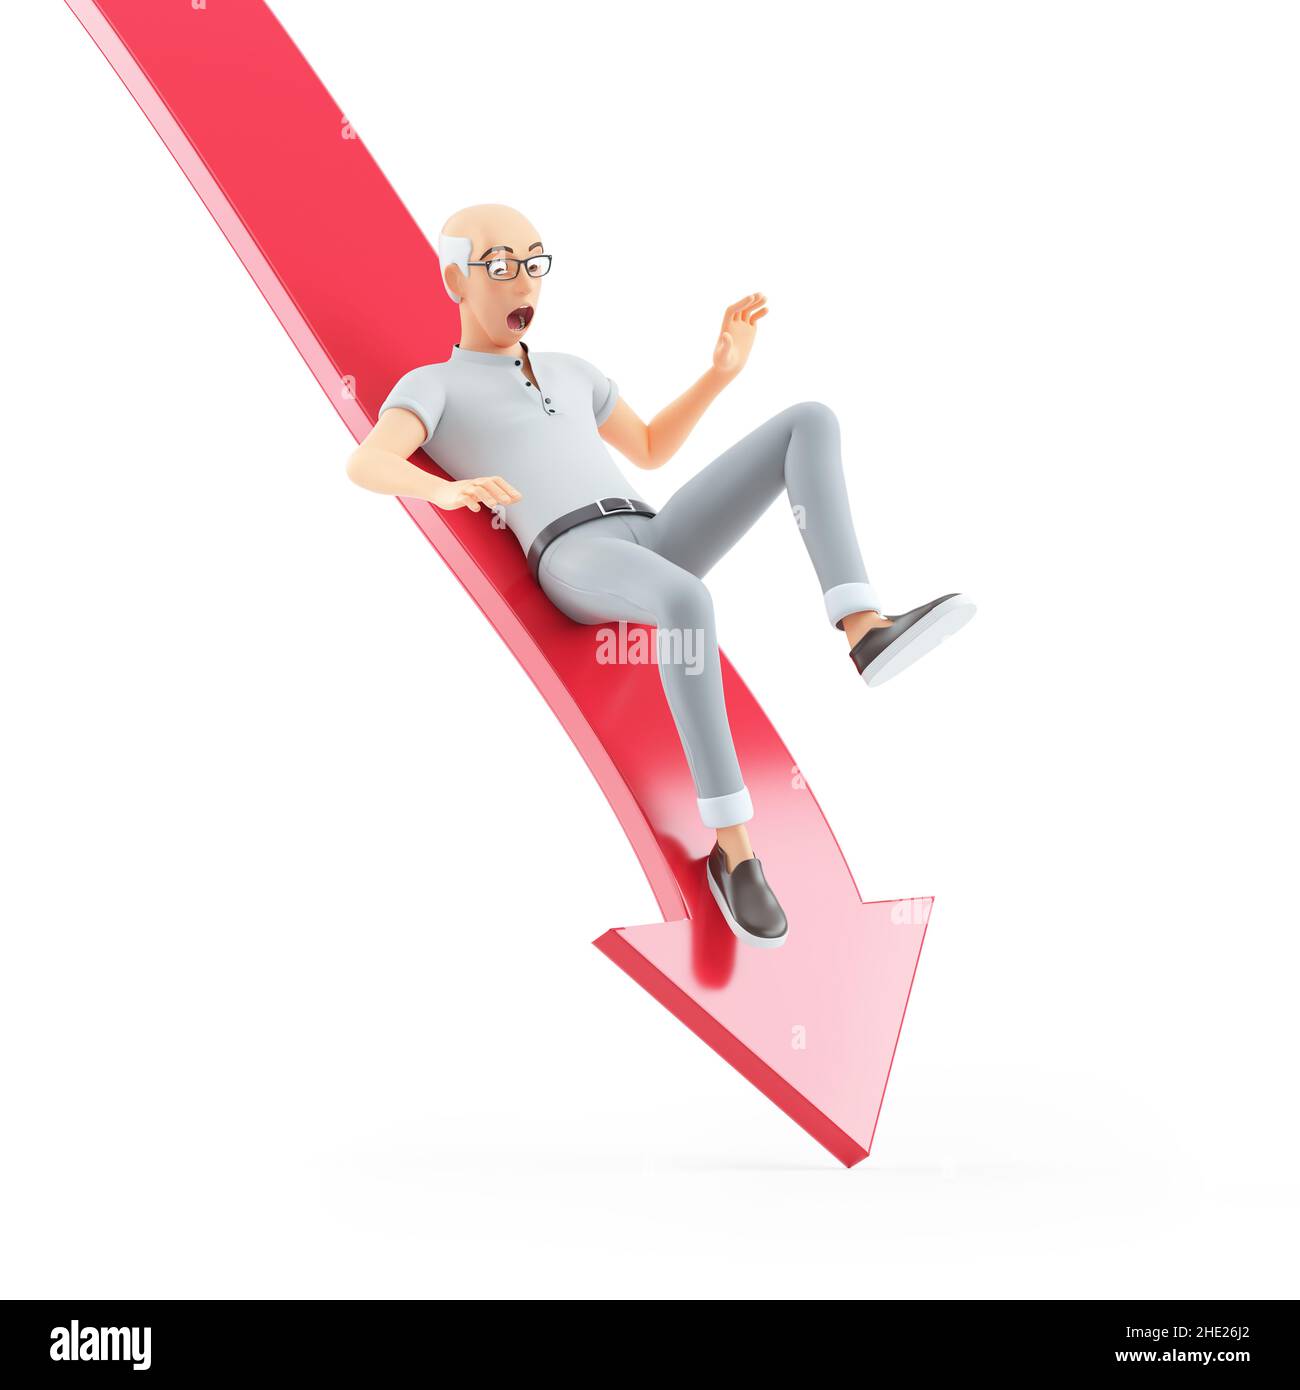 3D älterer Mann fällt vom Pfeil nach unten, Abbildung isoliert auf weißem Hintergrund Stockfoto